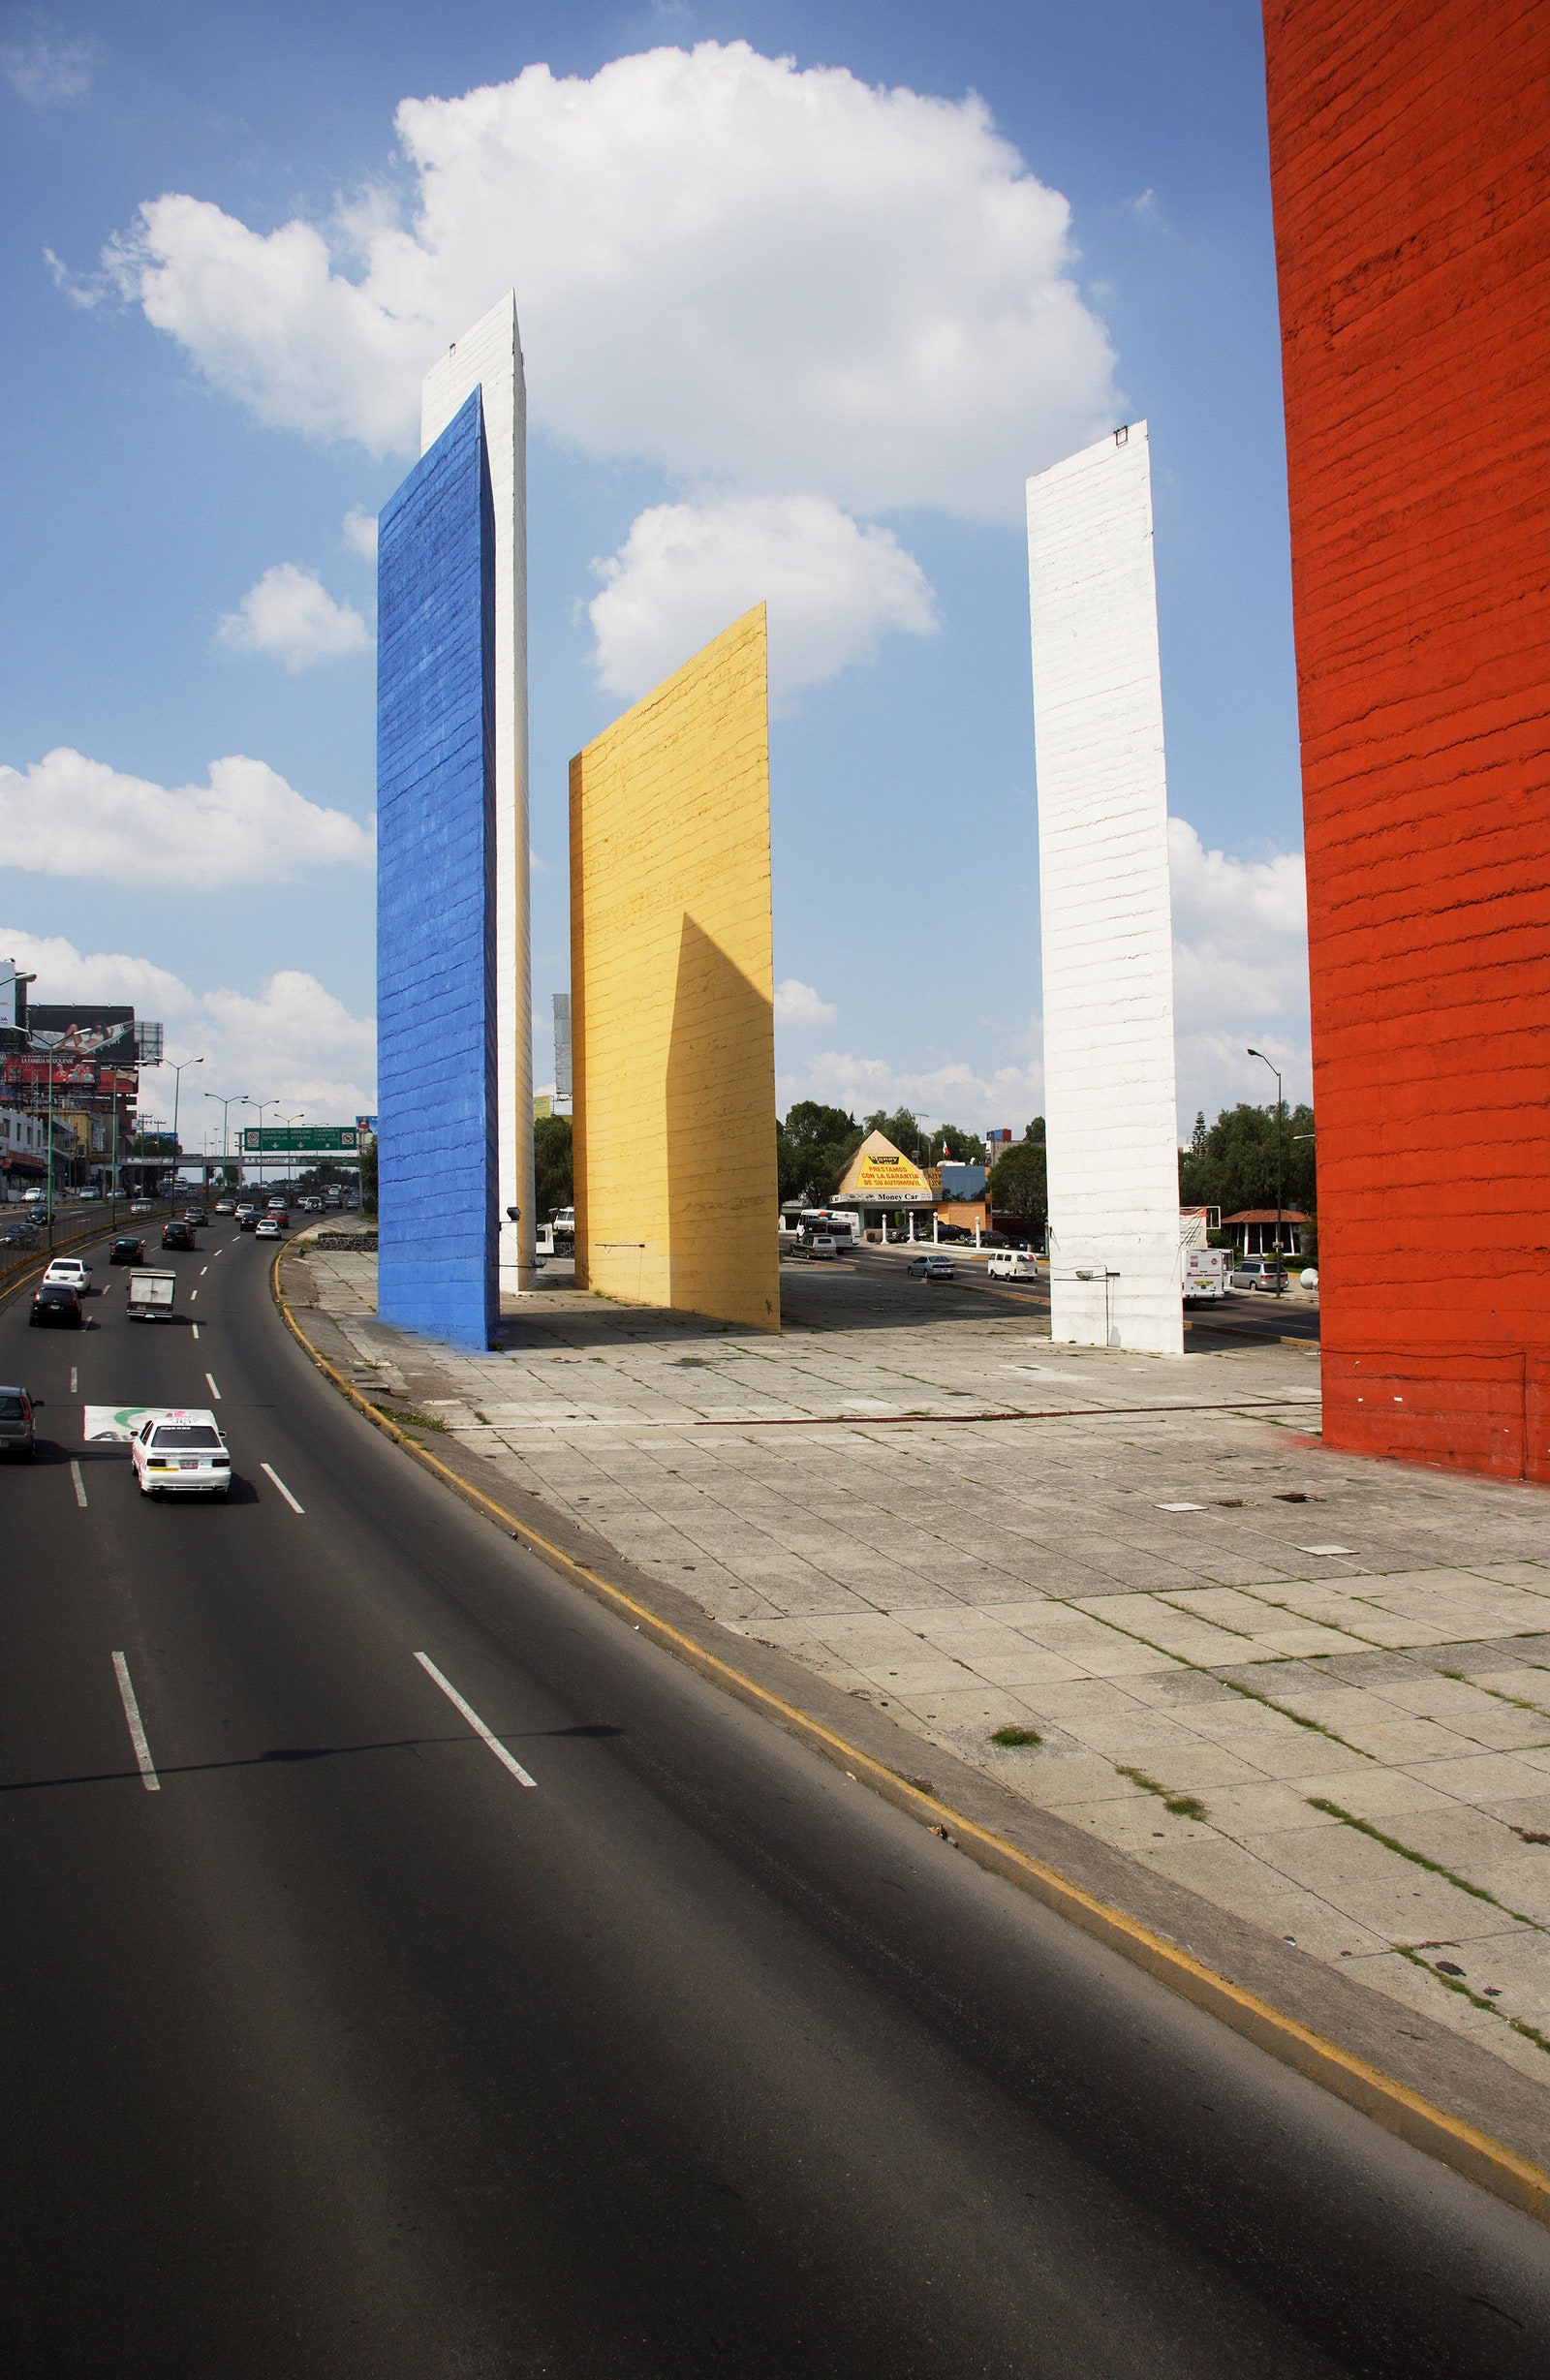 Cкульптура Torres de Satlite в северной части Мехико.